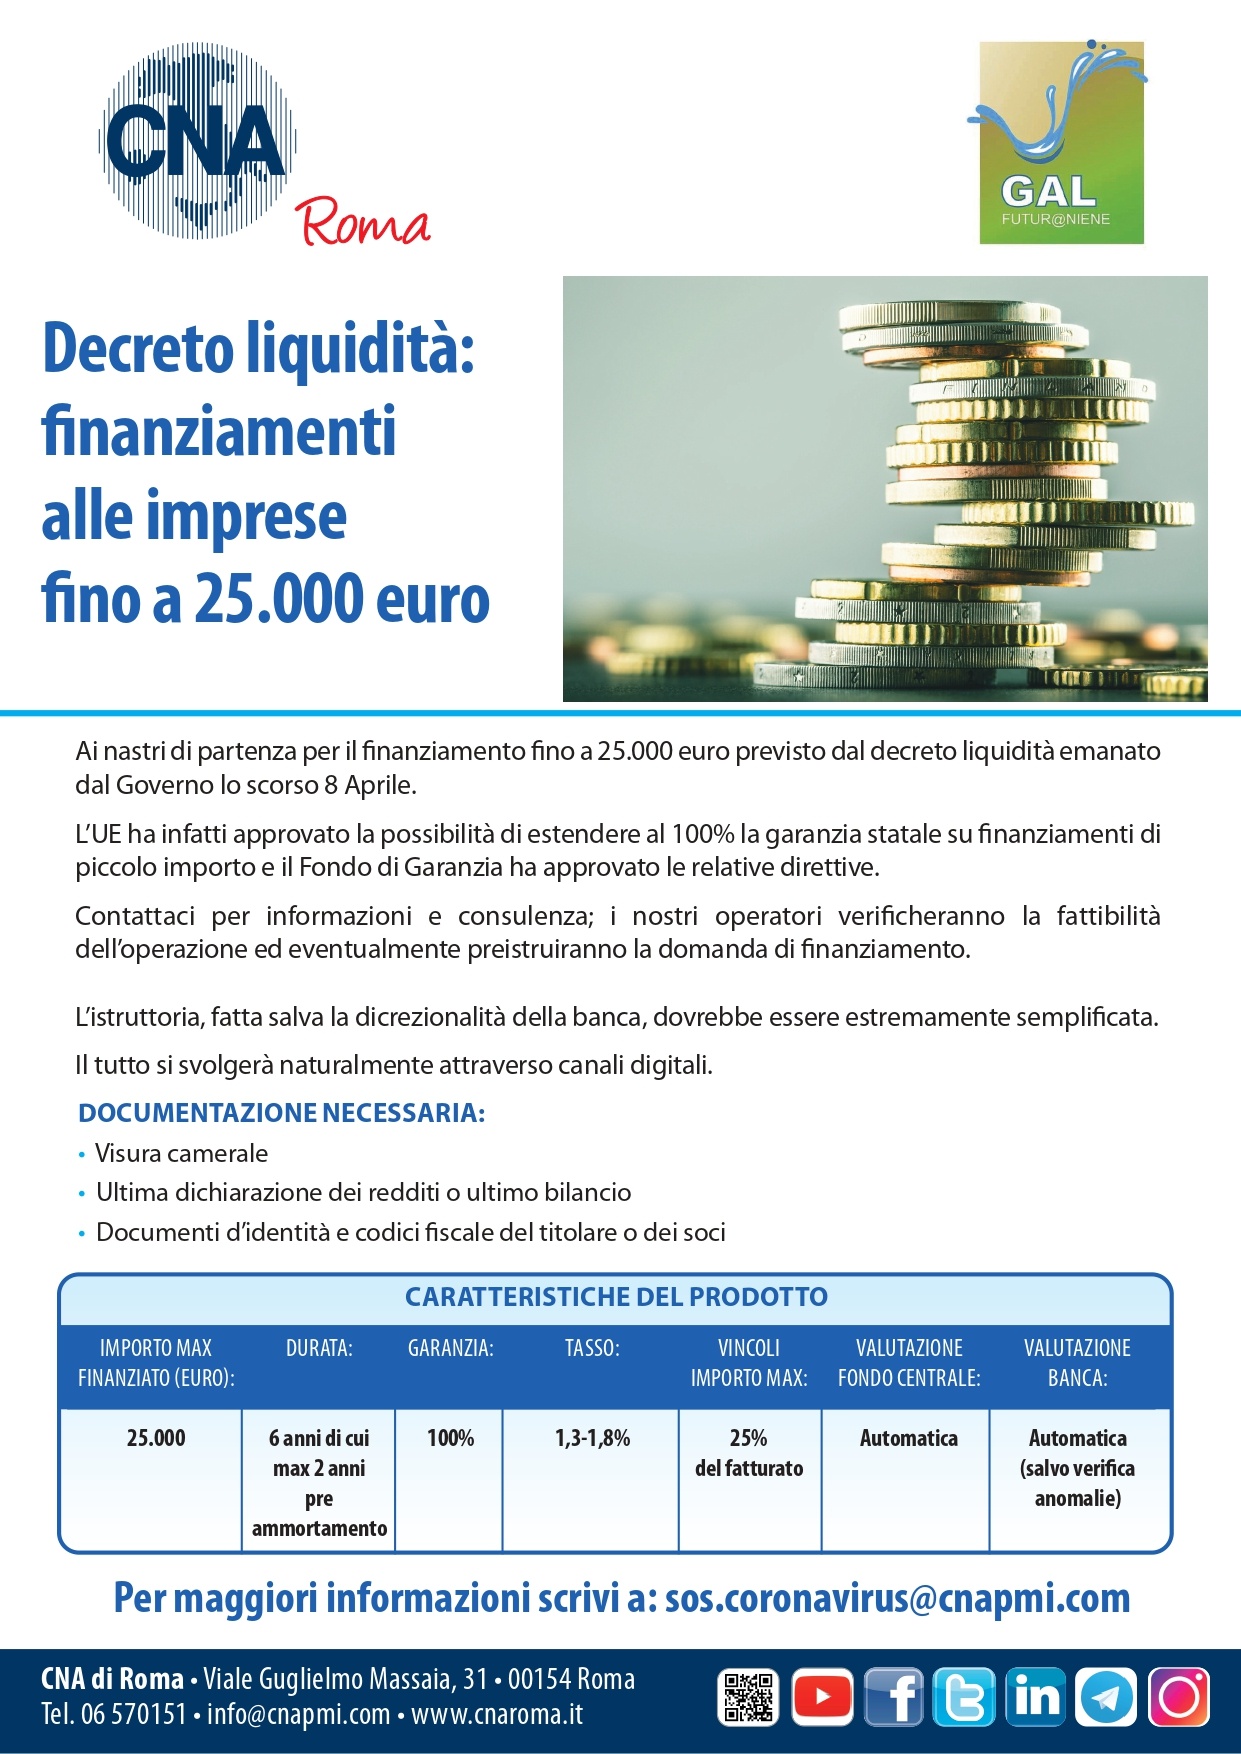 Decreto Liquidità: finanziamenti alle imprese fino a 25.000 euro